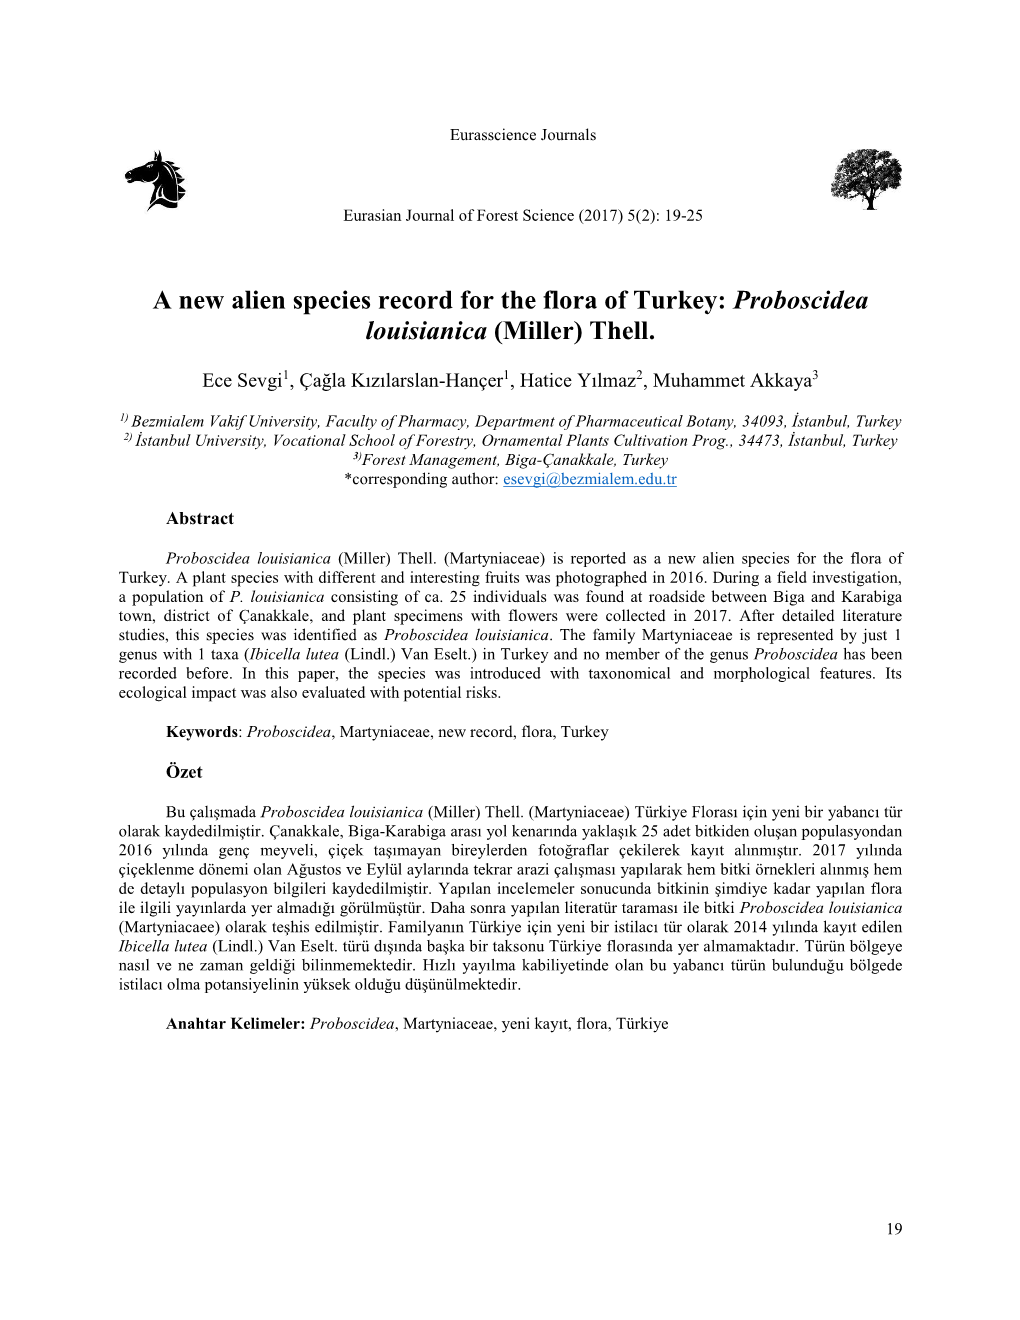 Proboscidea Louisianica (Miller) Thell